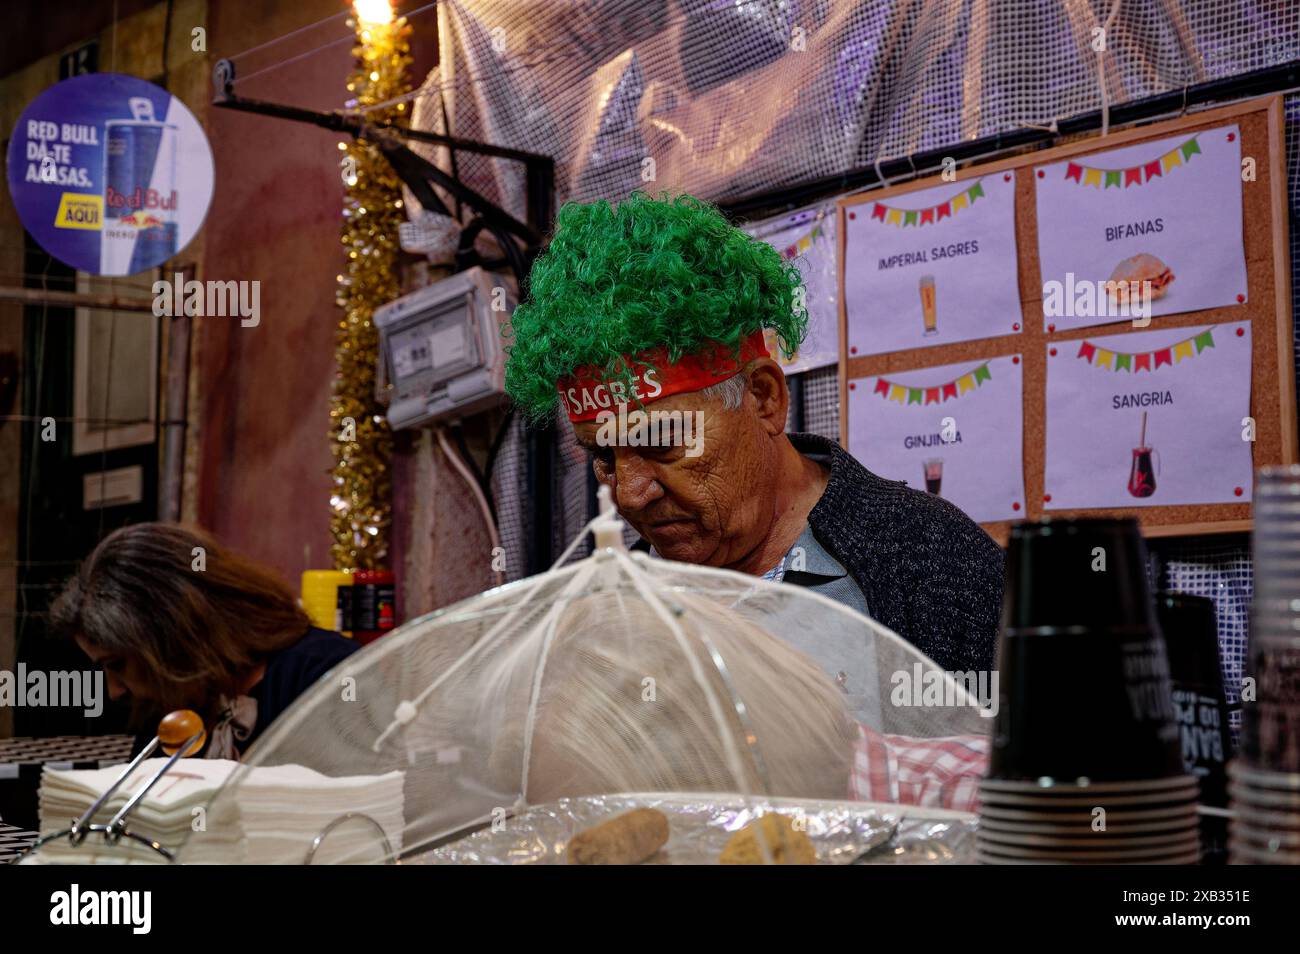 Ein reifer Mann mit grüner Perücke, der sich während der beliebten Heiligenfestlichkeiten in alfama intensiv in einem Essensstand konzentriert, ein farbenfroher illustriertes Menü hinter ihm Stockfoto